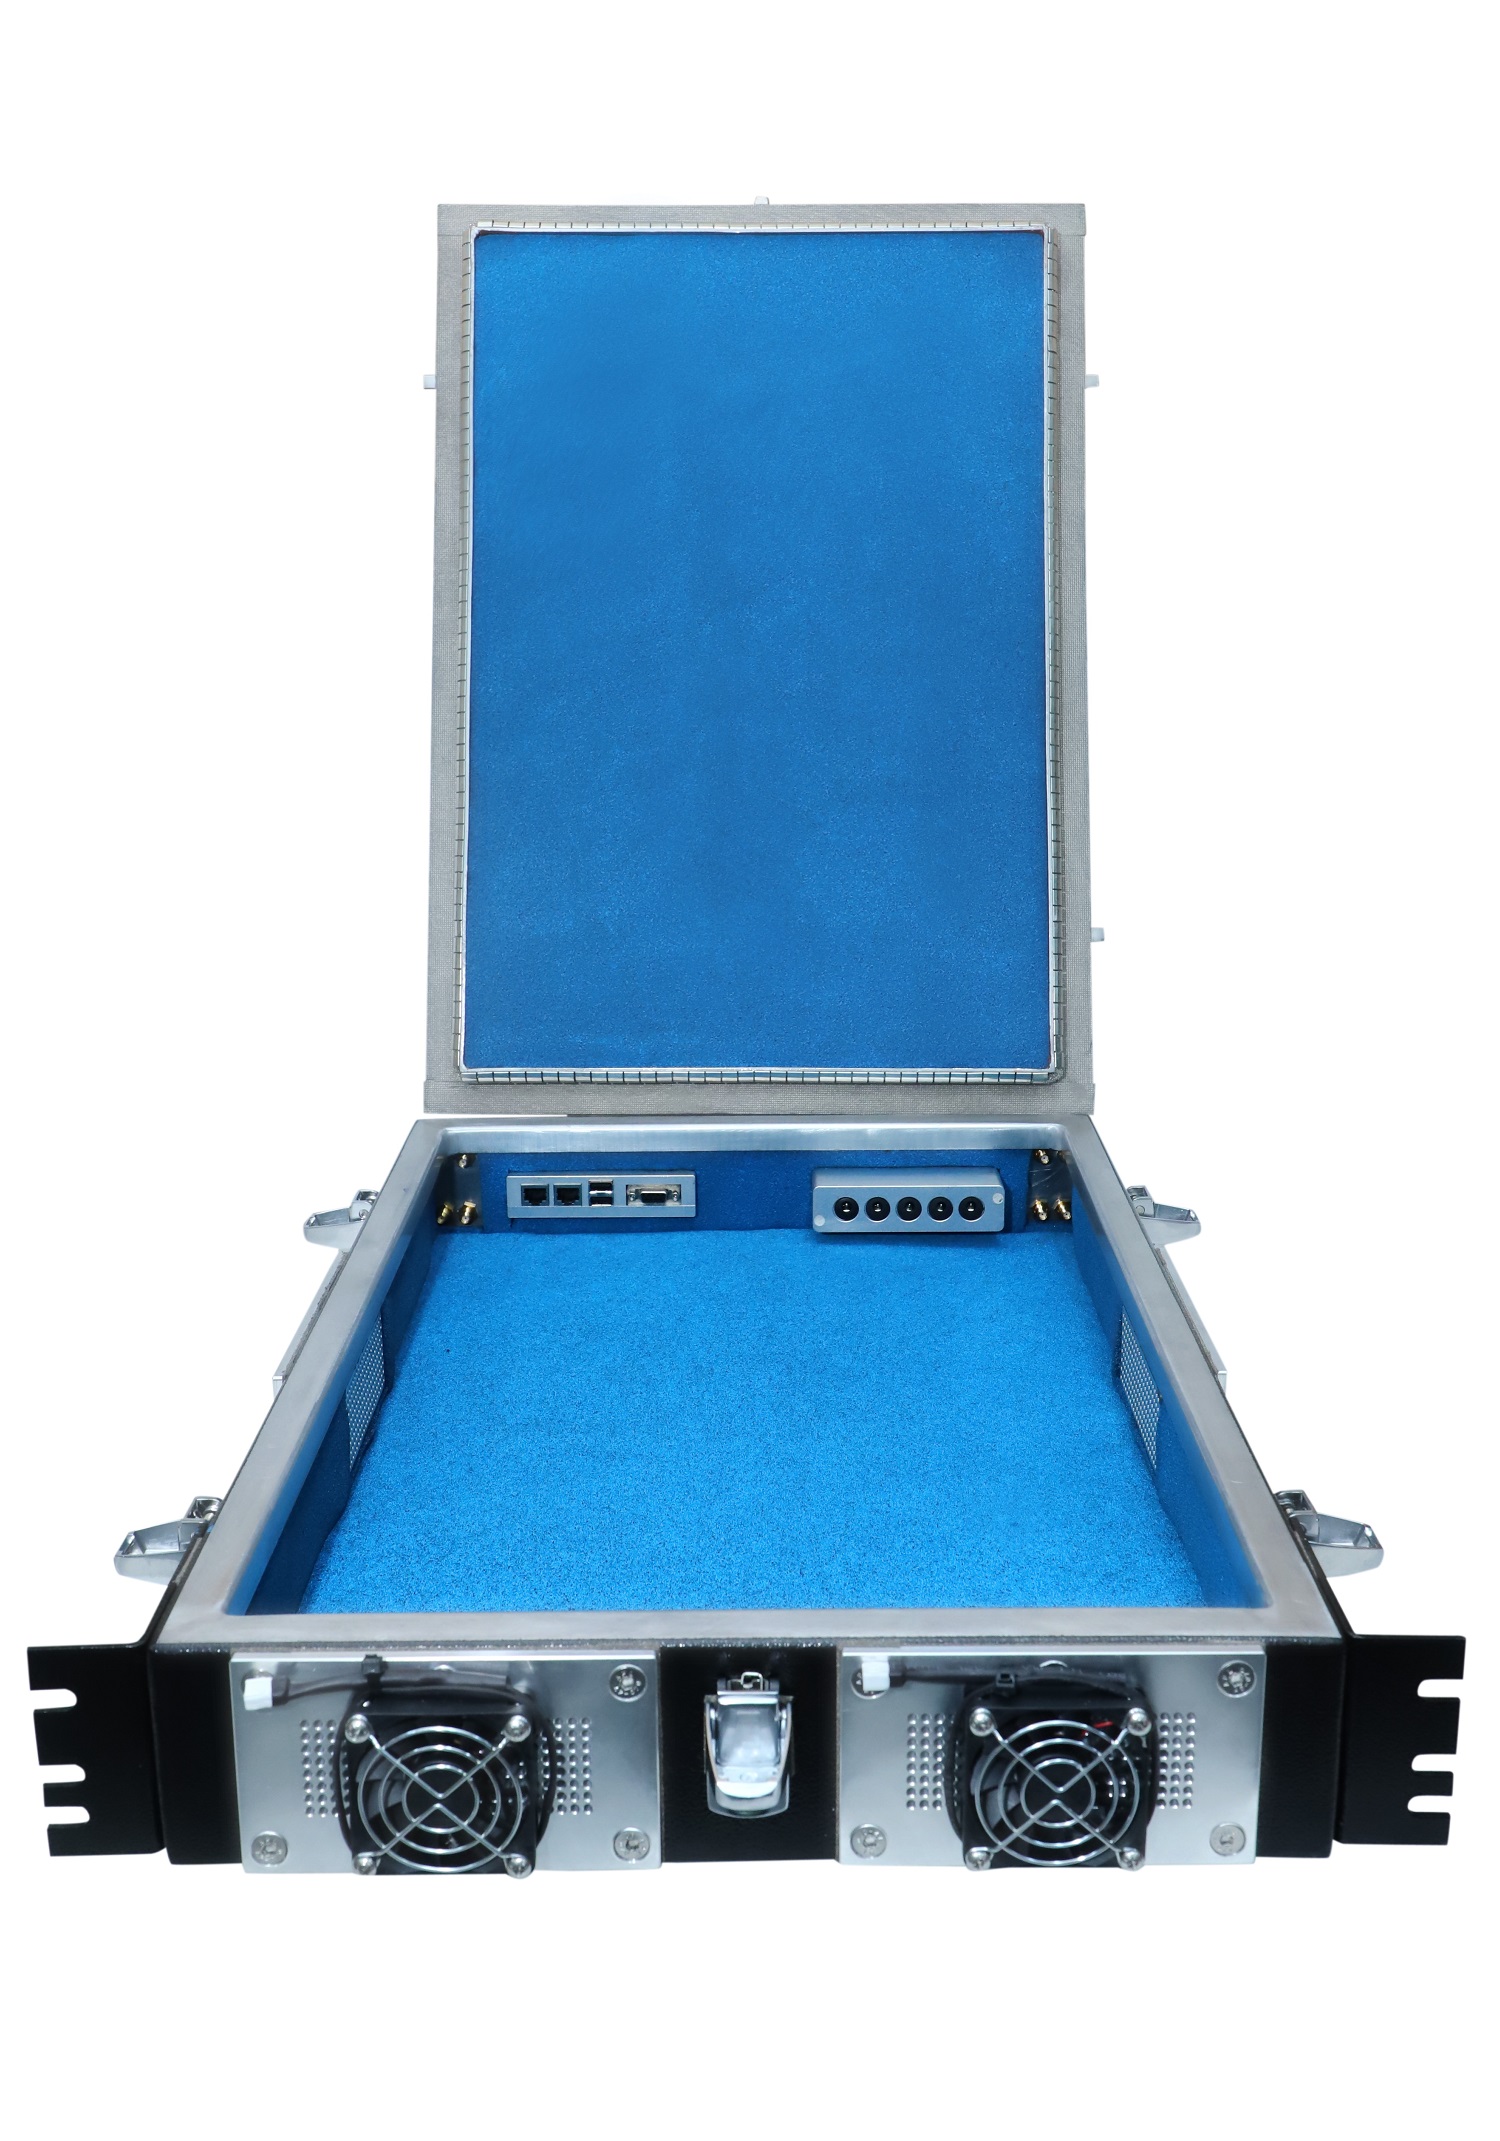 HDRF-2U19 RF Shield Test Box